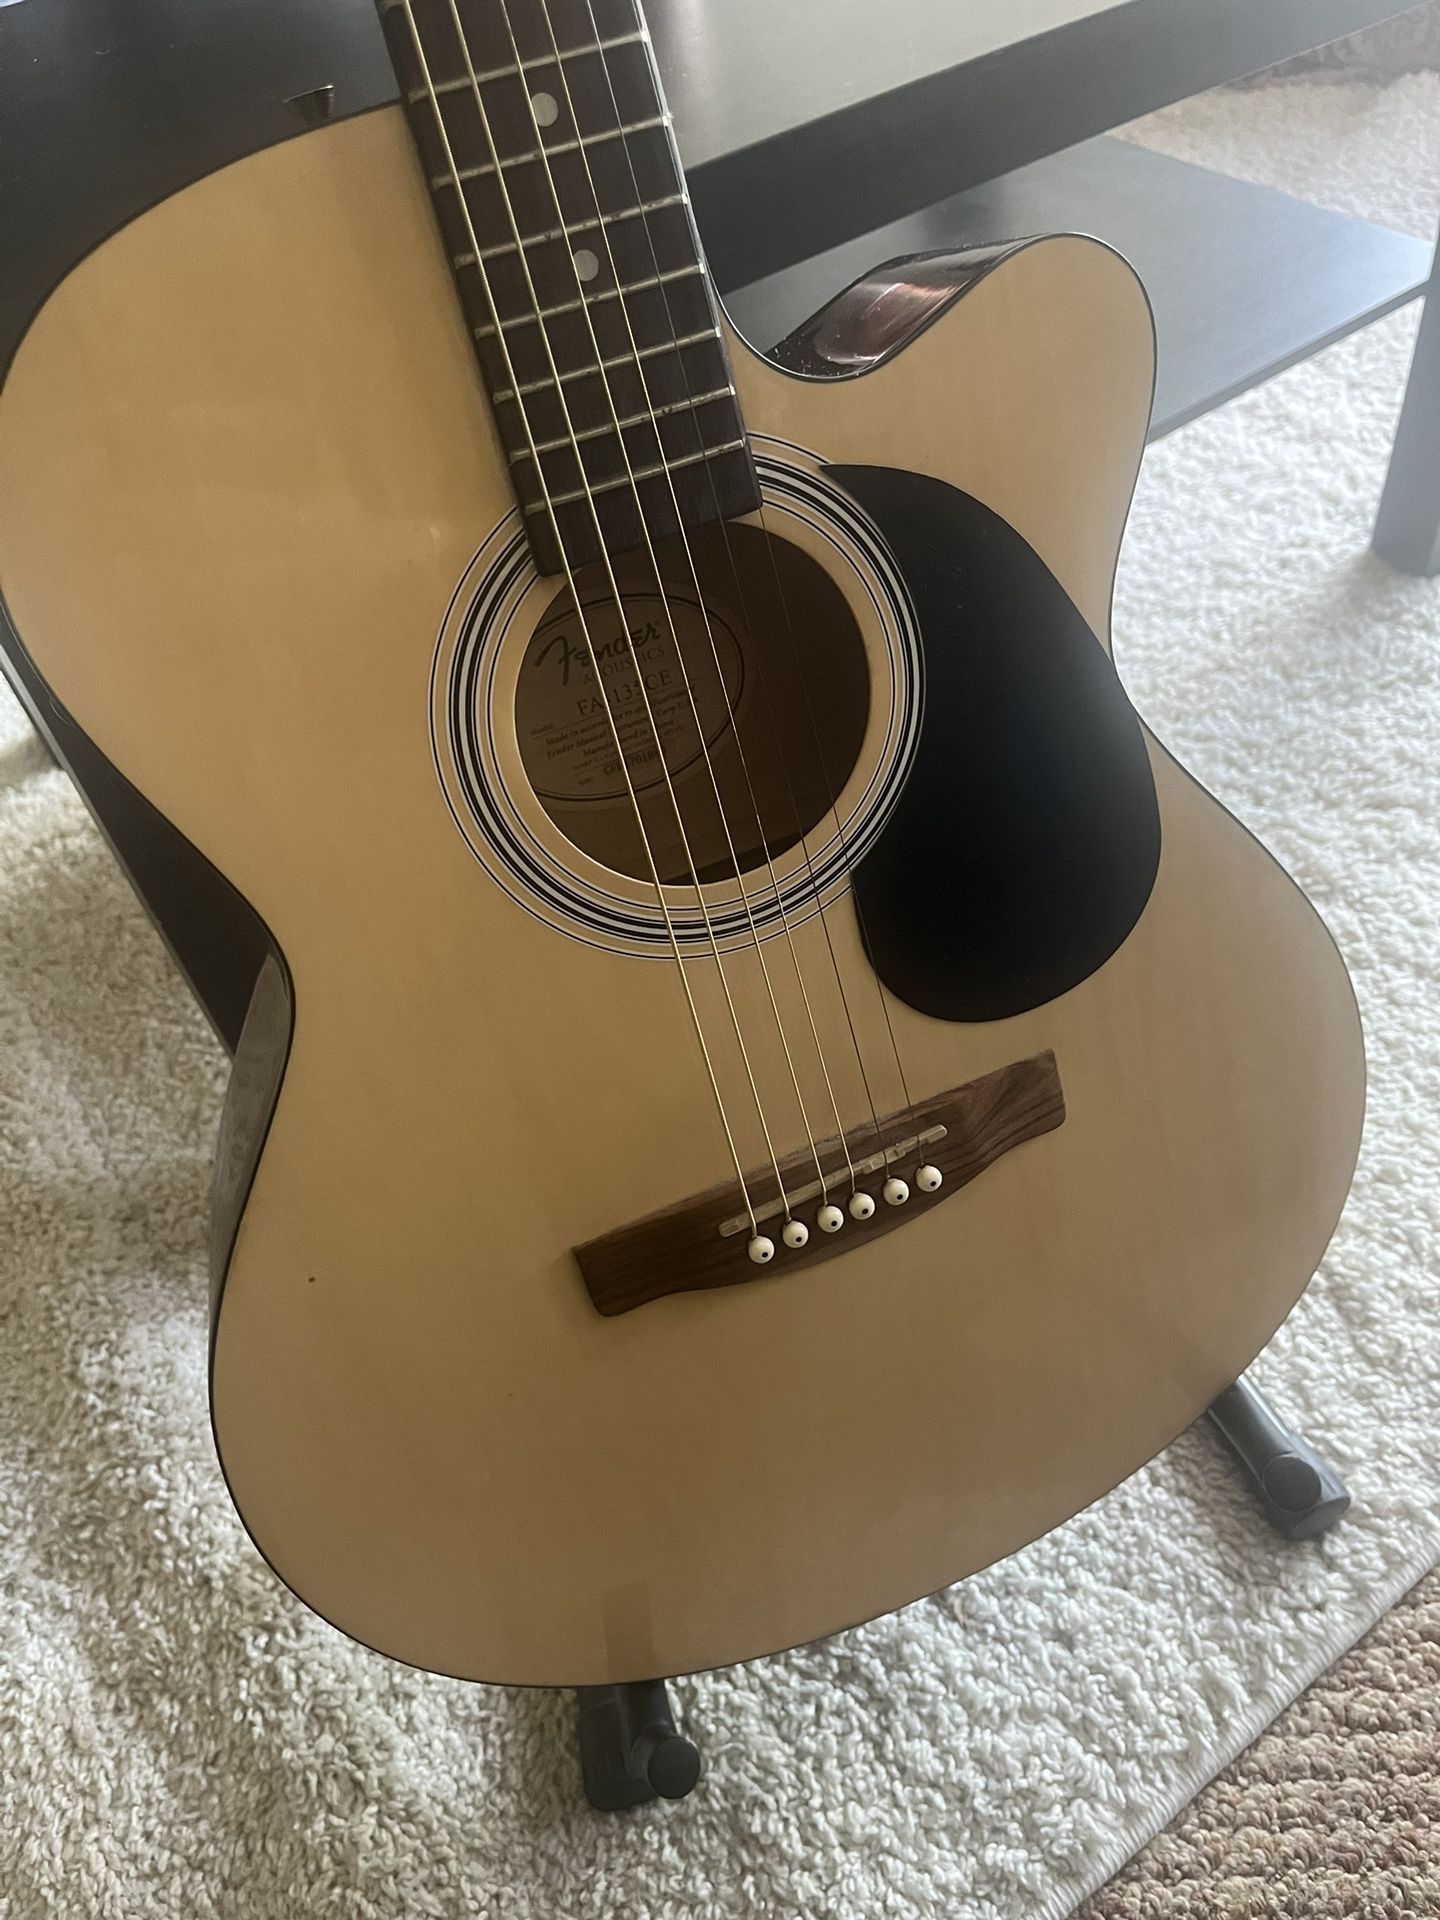 Fender Guitar $60